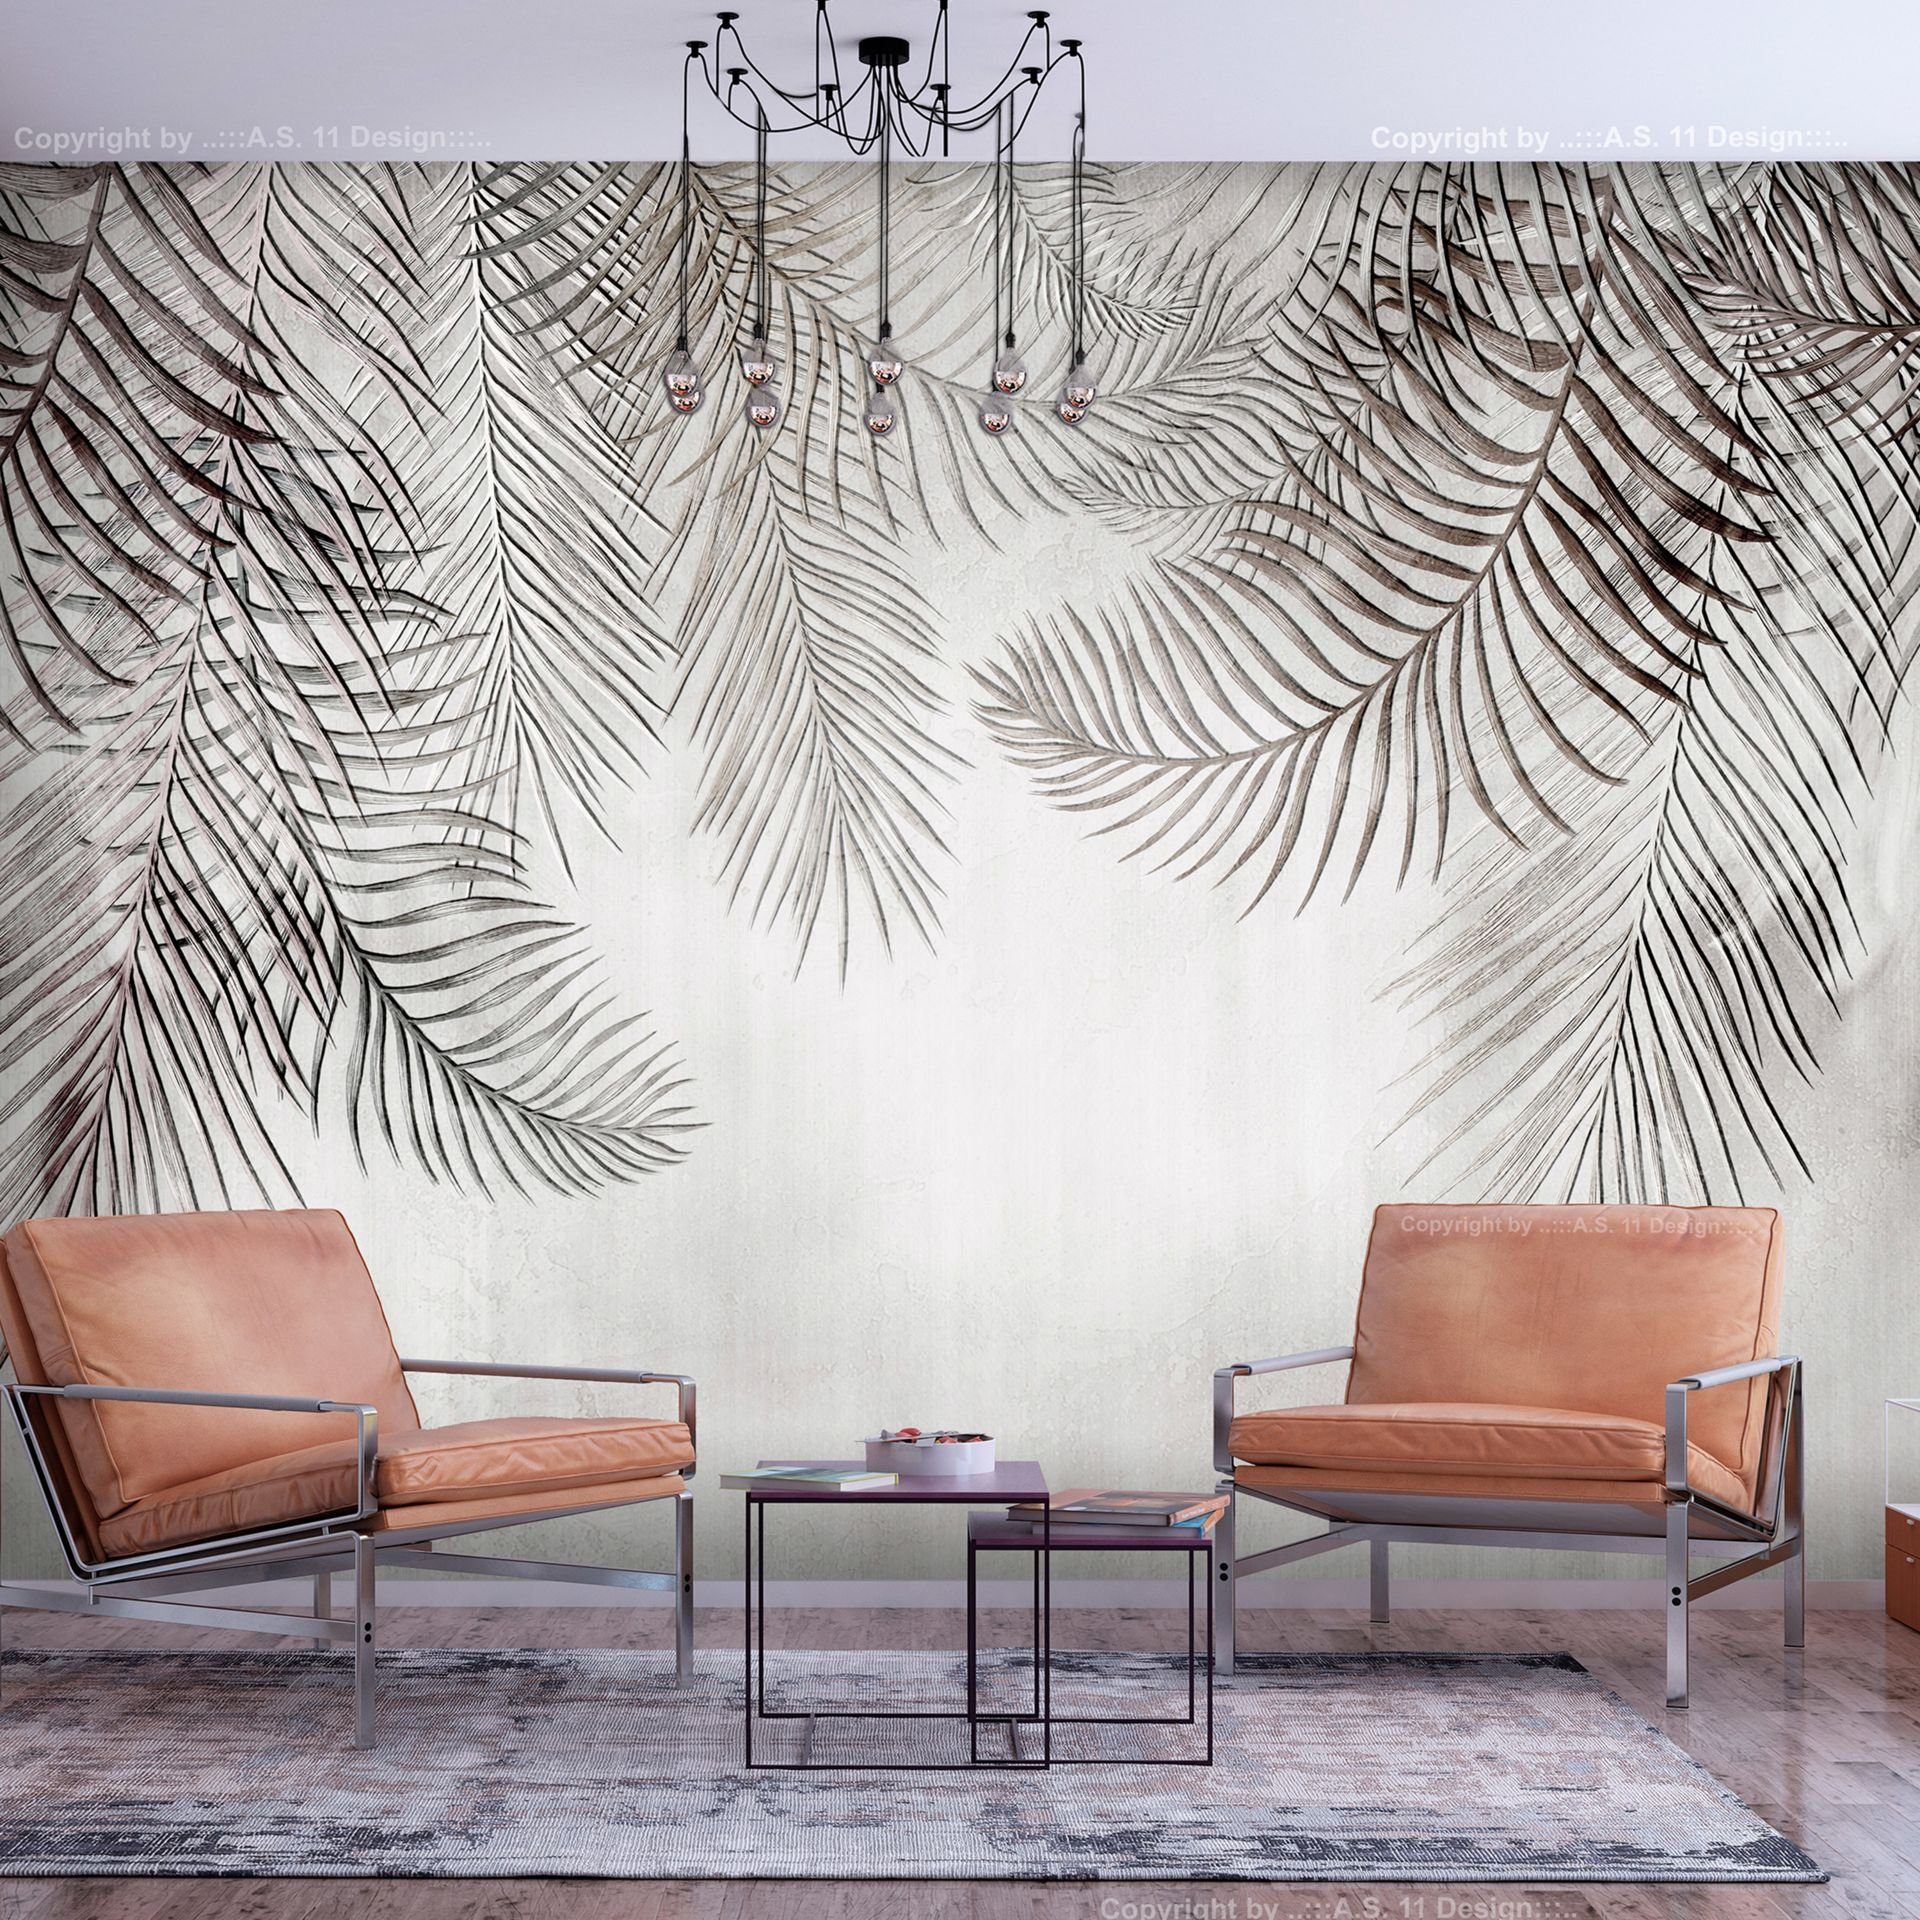 KUNSTLOFT Vliestapete Night Palm Trees 1x0.7 m, halb-matt, lichtbeständige Design Tapete